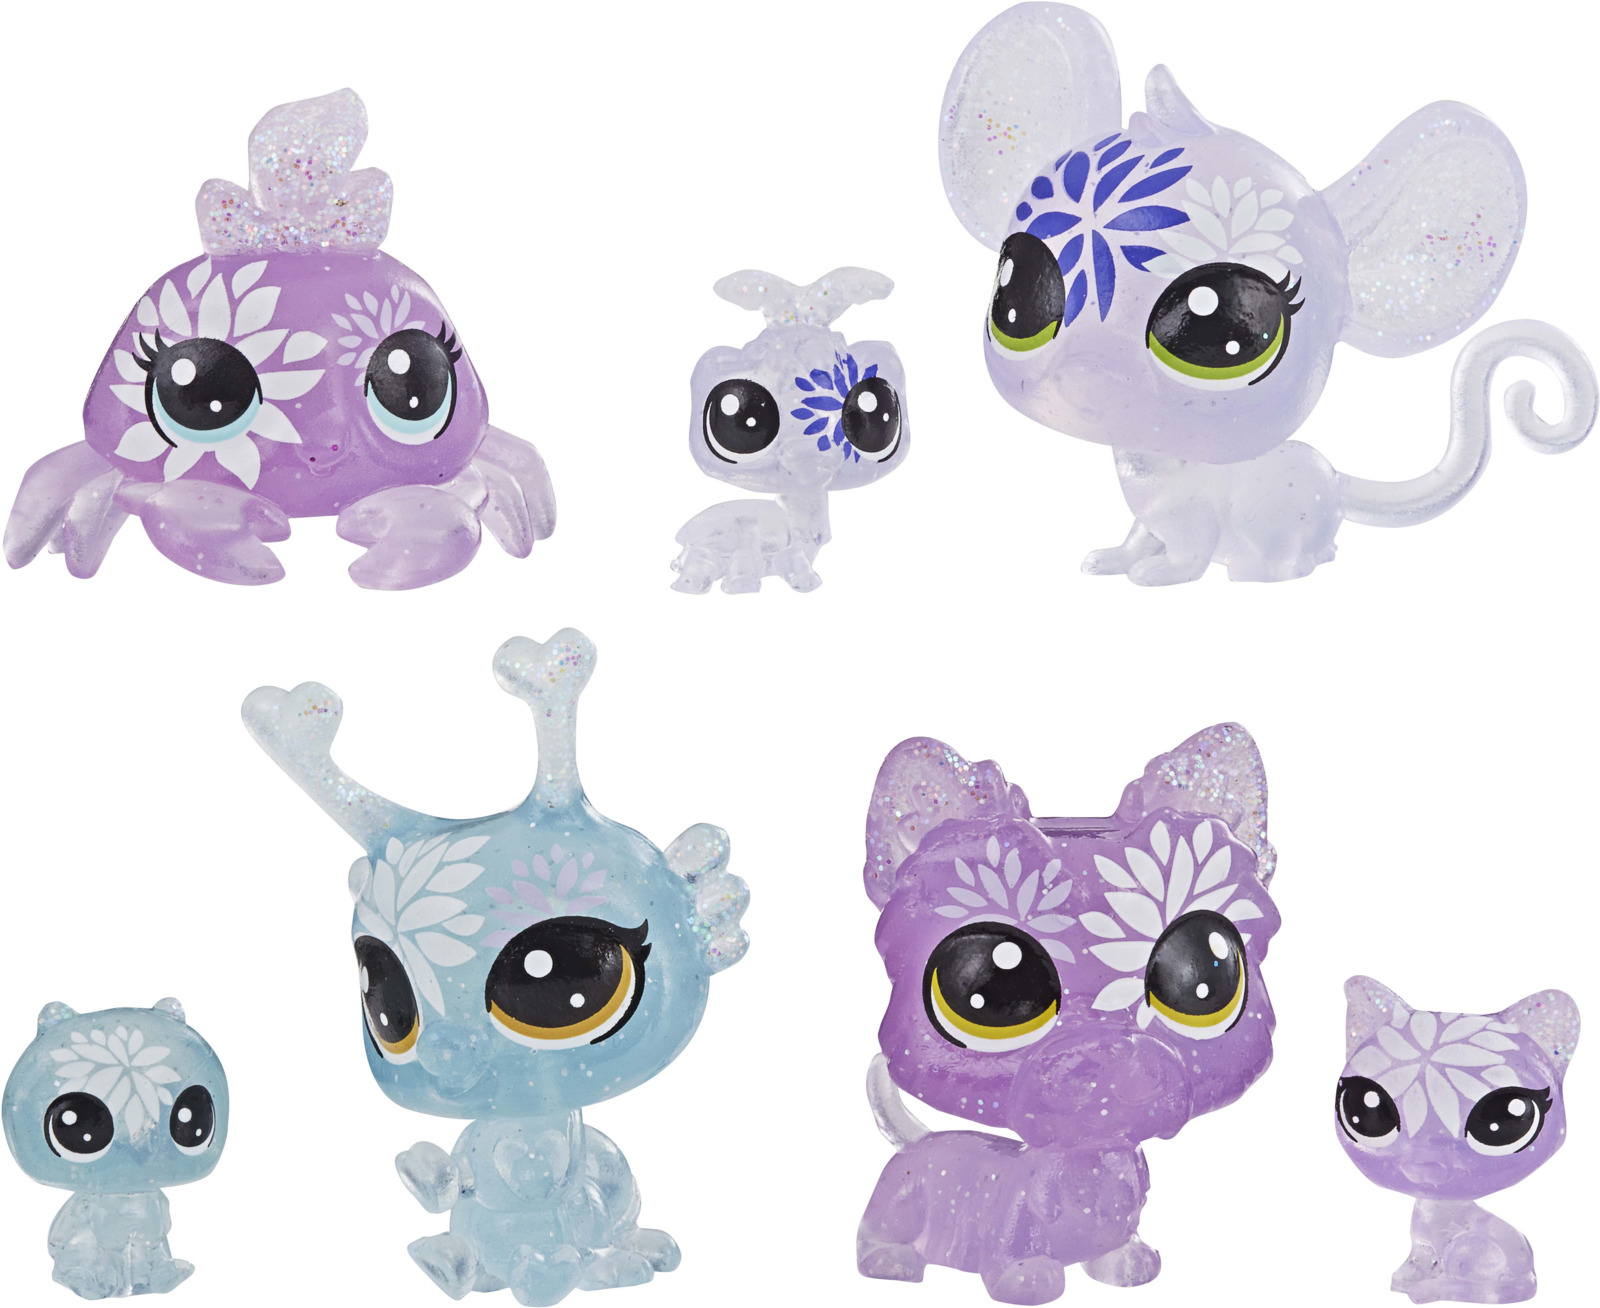 Игровой набор Littlest Pet Shop Core 7 Цветочных Петов, E5149EU4, цвет: фиолетовый